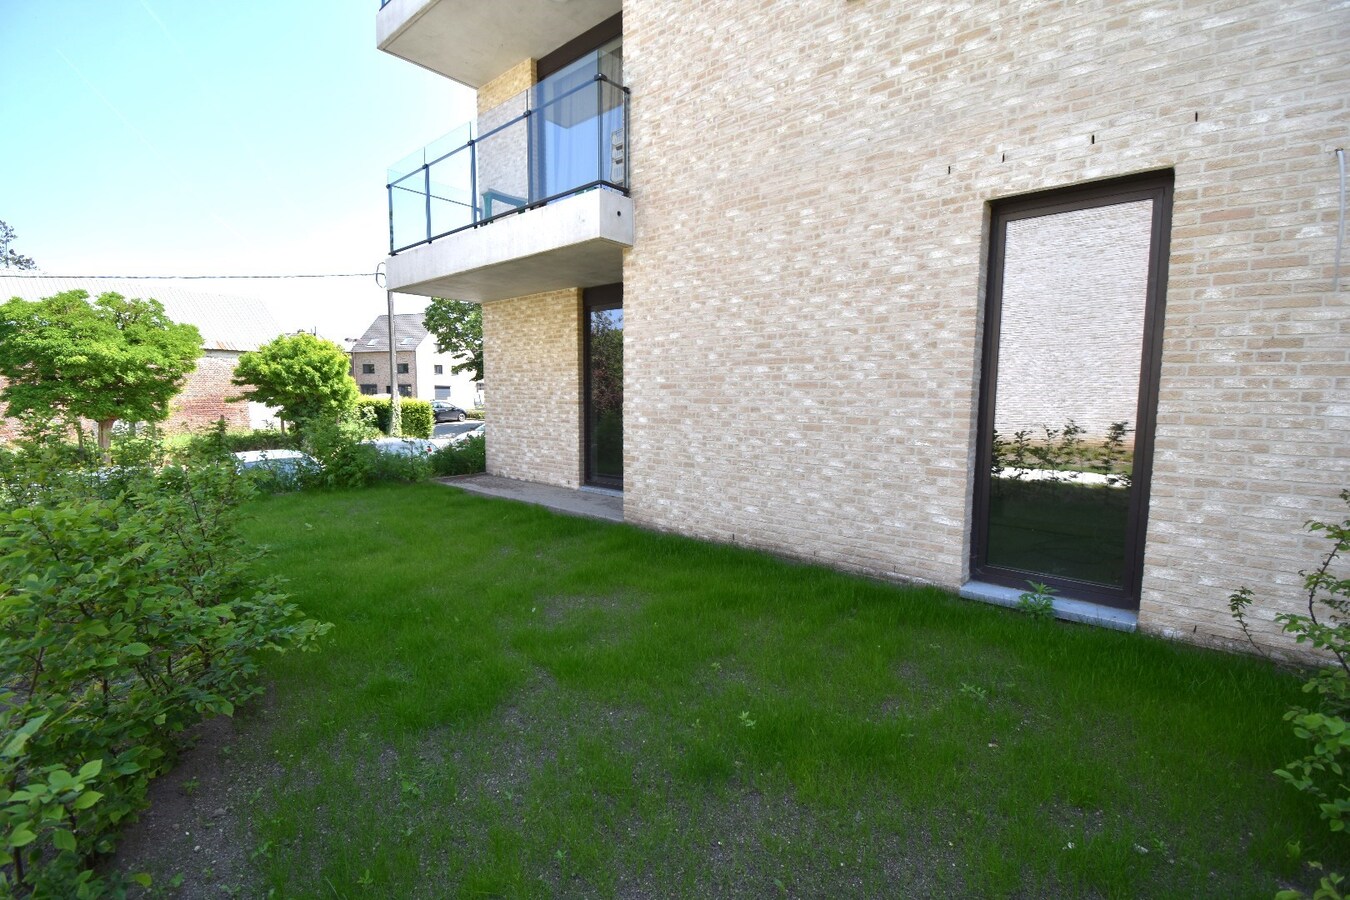 HANDELSRUIMTE van 85 m2 + tuin/ terras achteraan! 